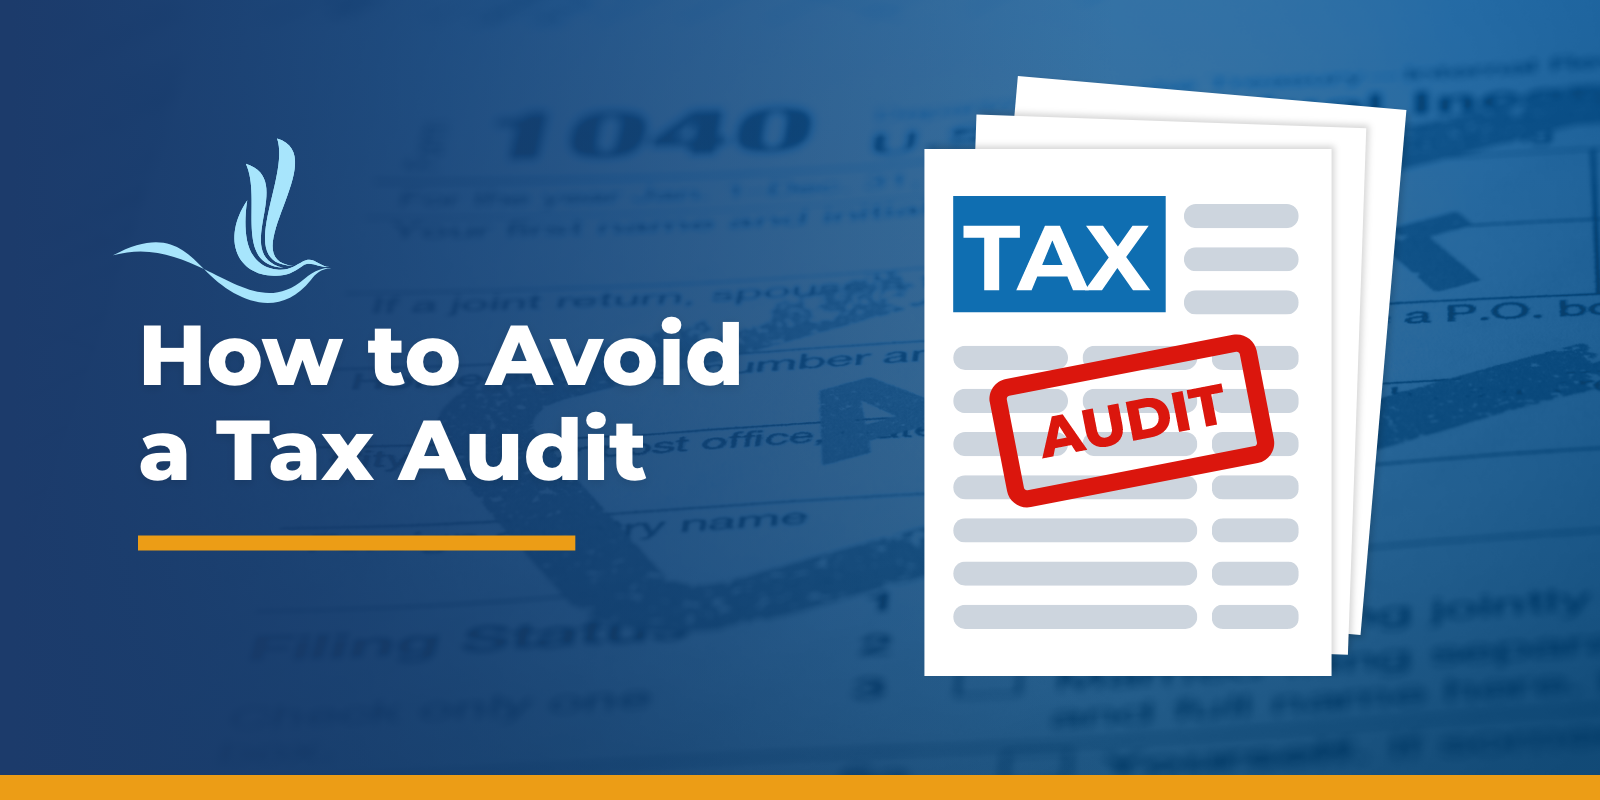 Avoid tax Audit